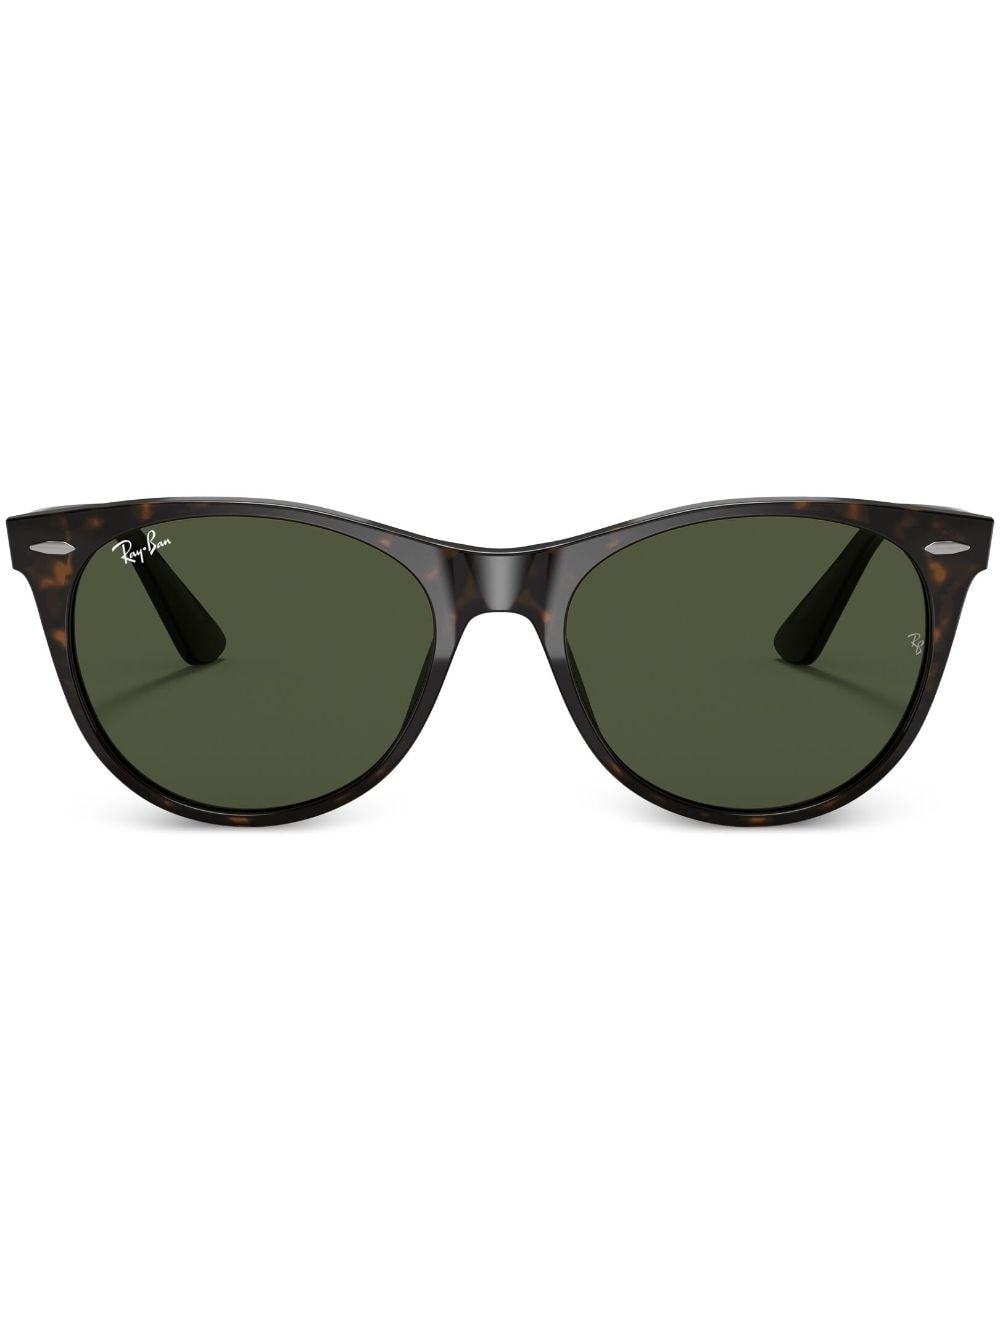 Ray-Ban Wayfarer II sunglasses - Green von Ray-Ban